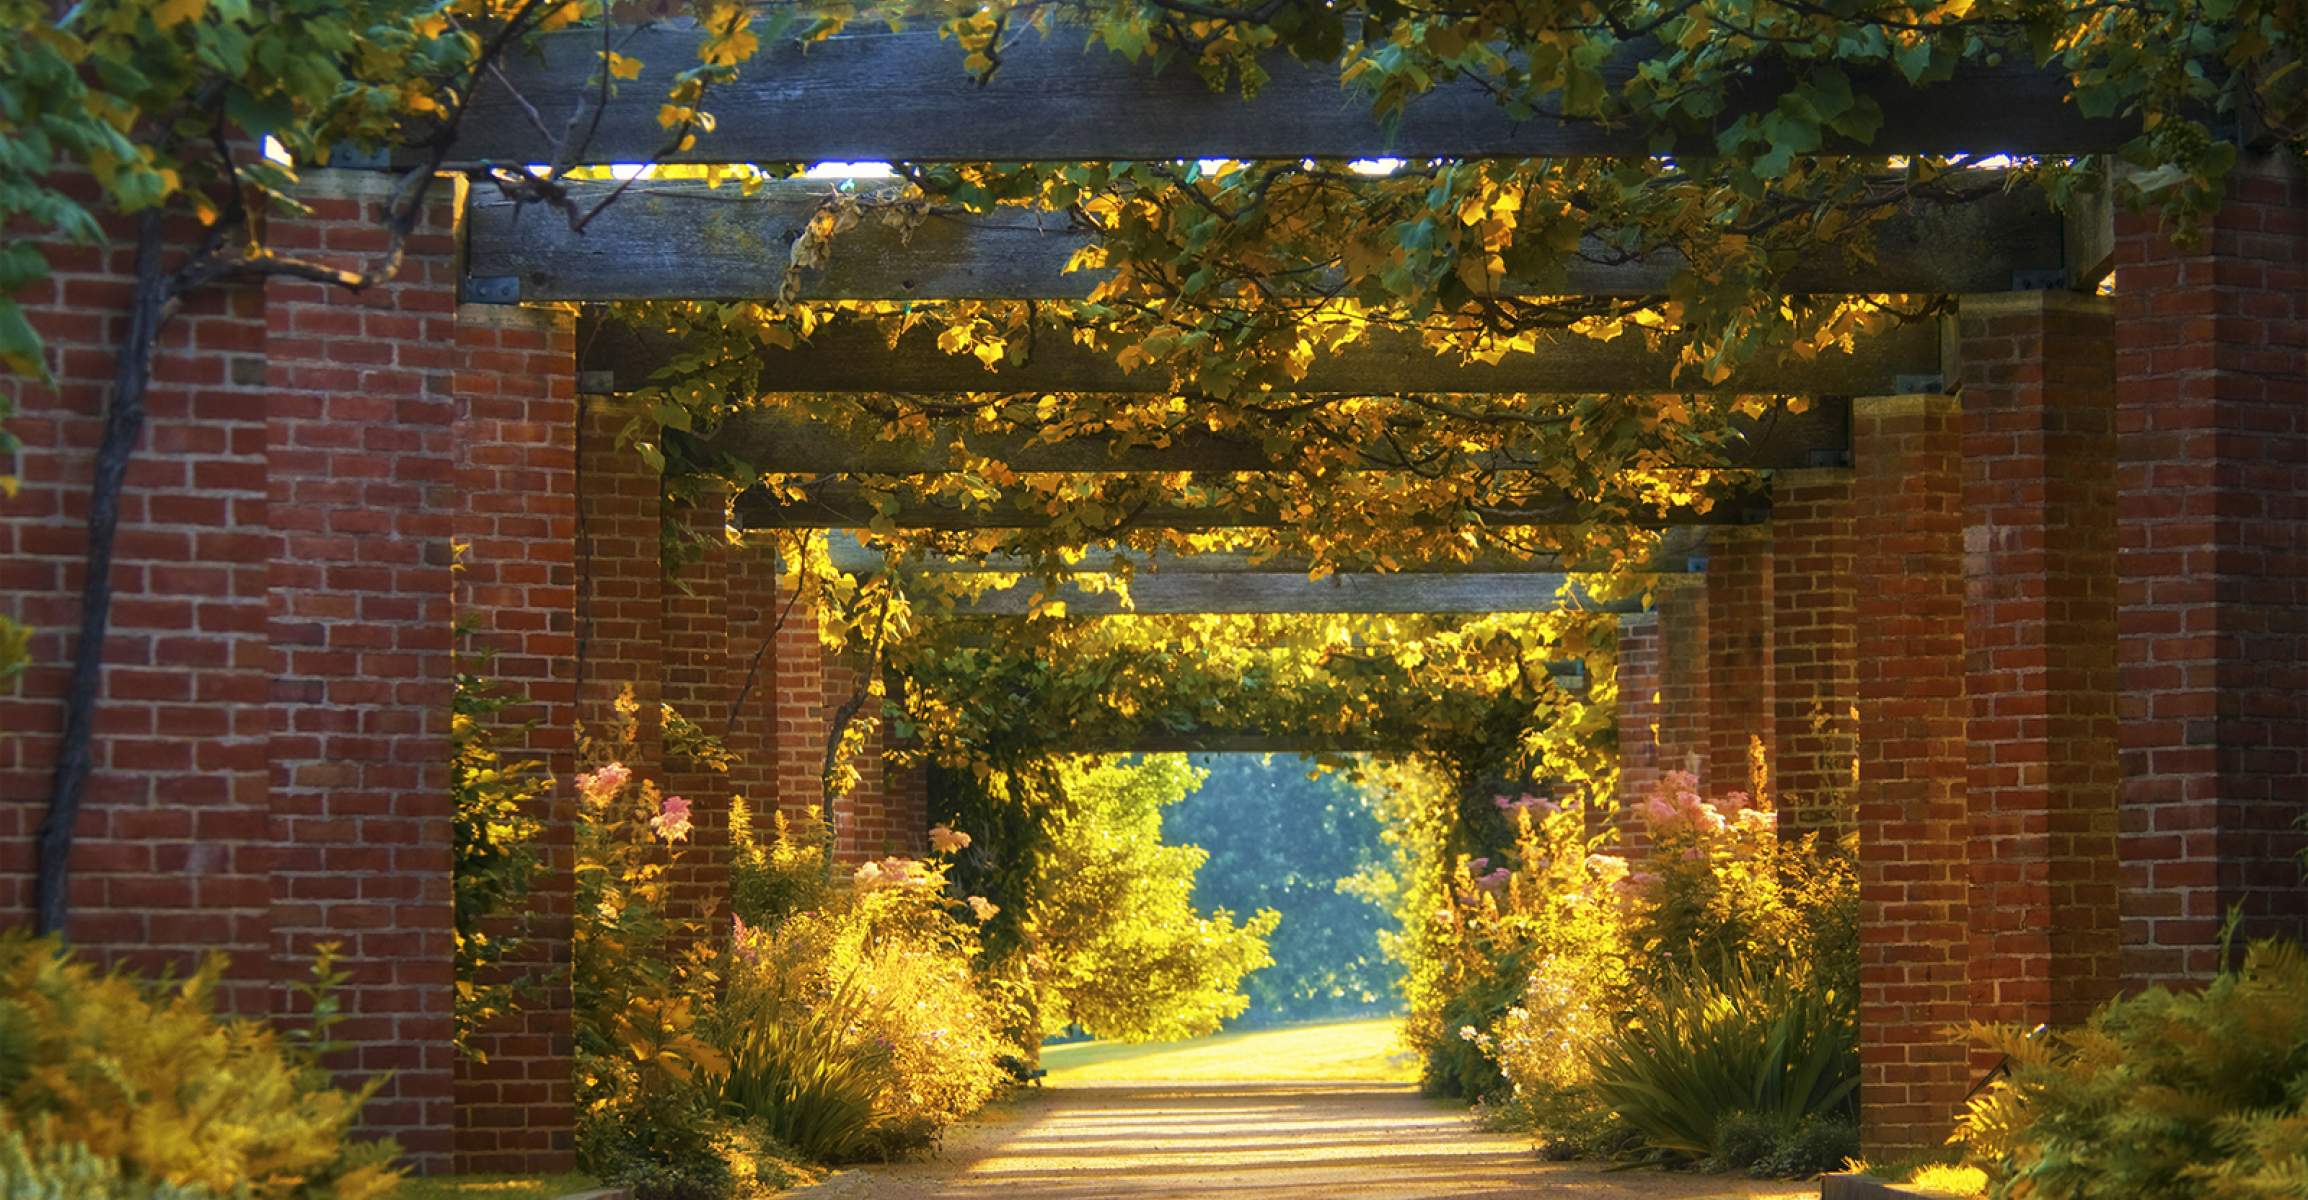 Photo of the Garden Grape Arbor path at Chicago Botanic Garden.